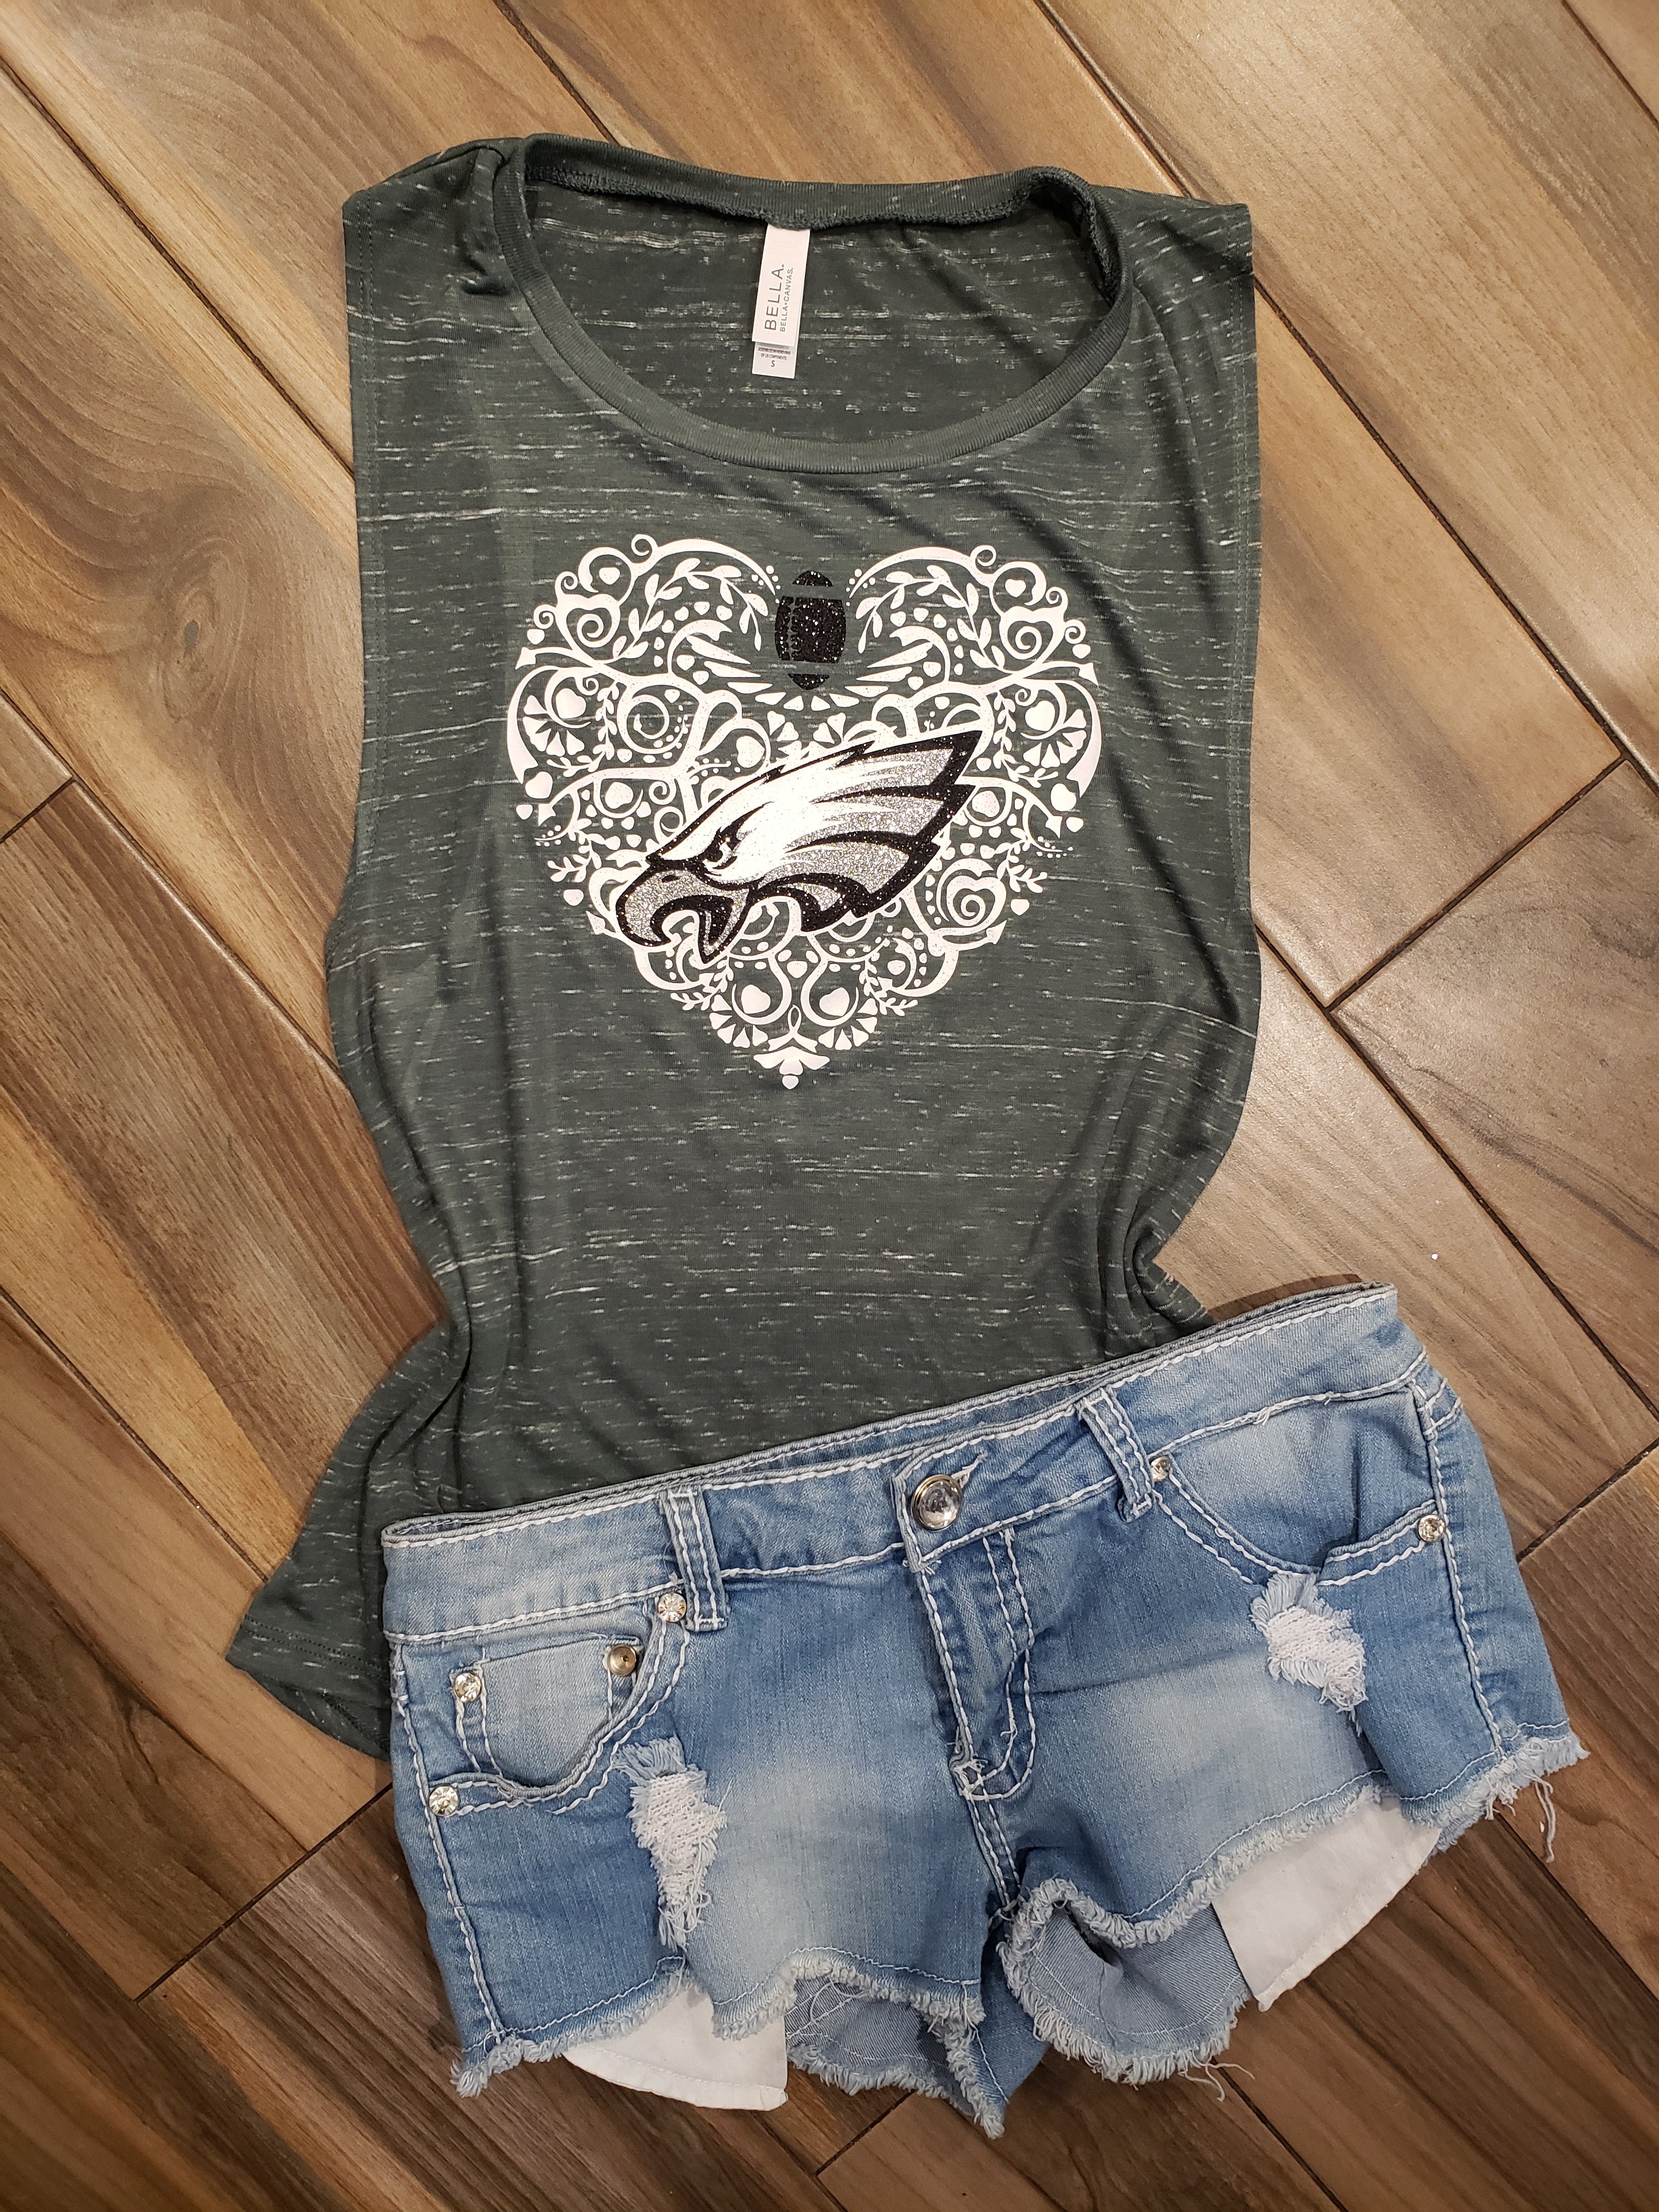 Lulu Grace Designs Philadelphia Eagles Glitter Heart Shirt: NFL Football Fan Gear & Apparel S / Ladies Muscle Tank